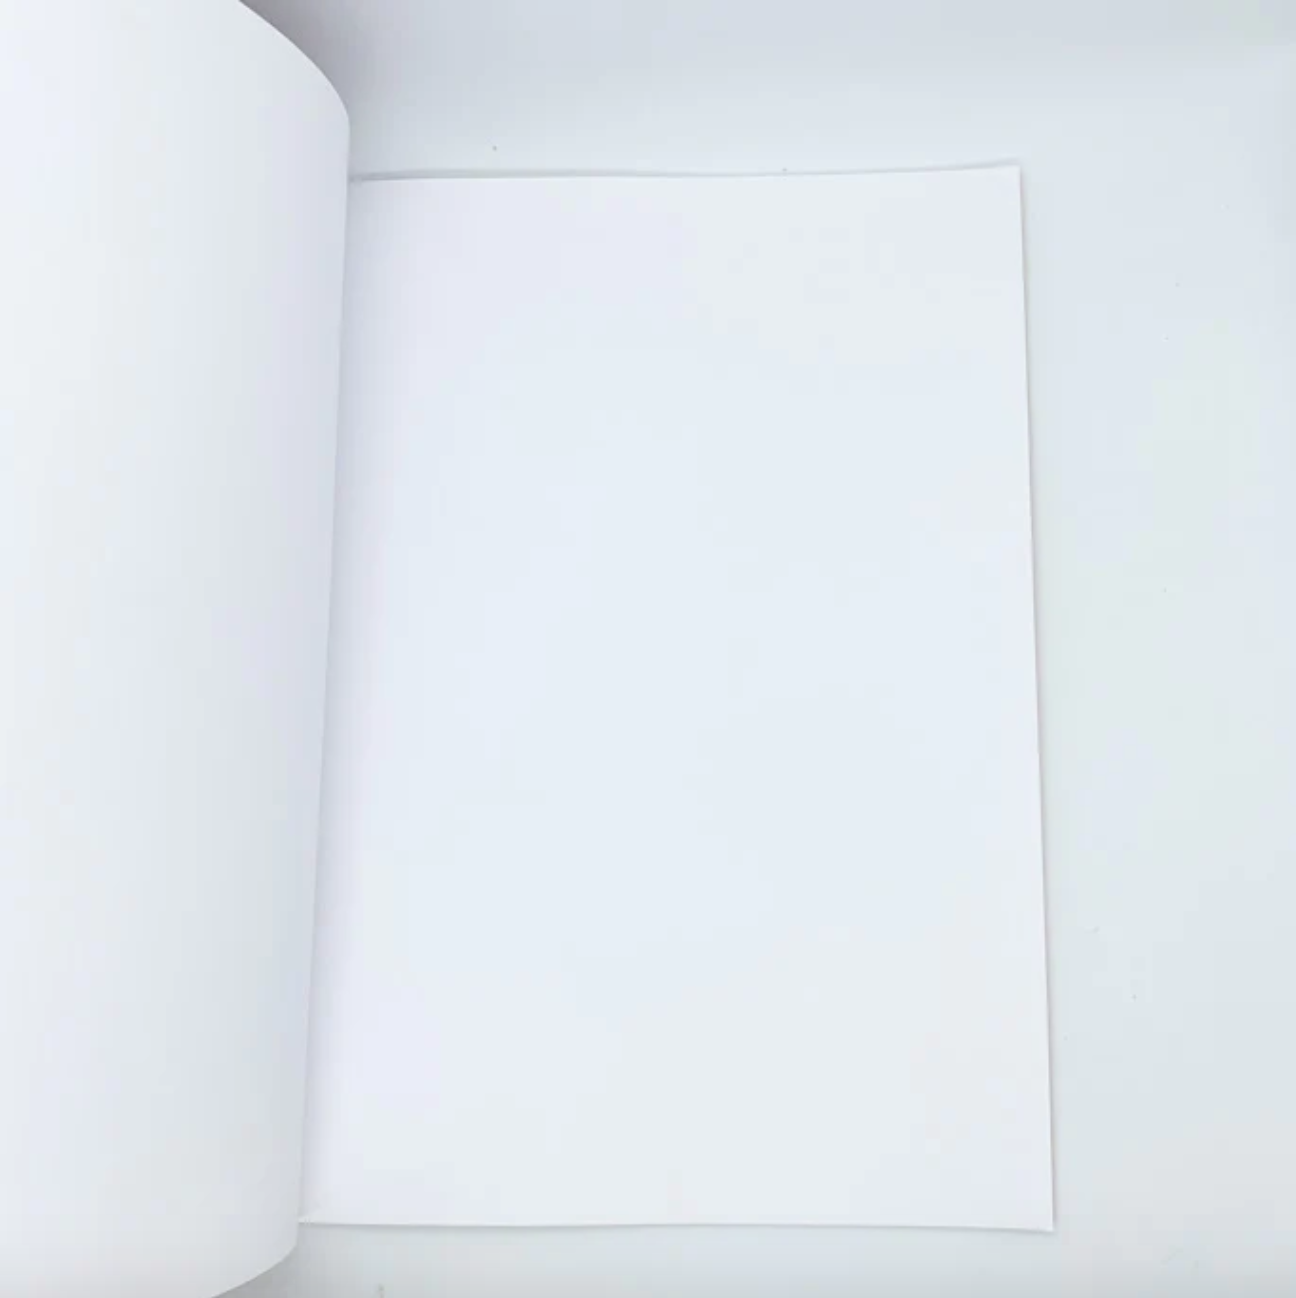 Mercurius Exercise book large 21x30cm blank